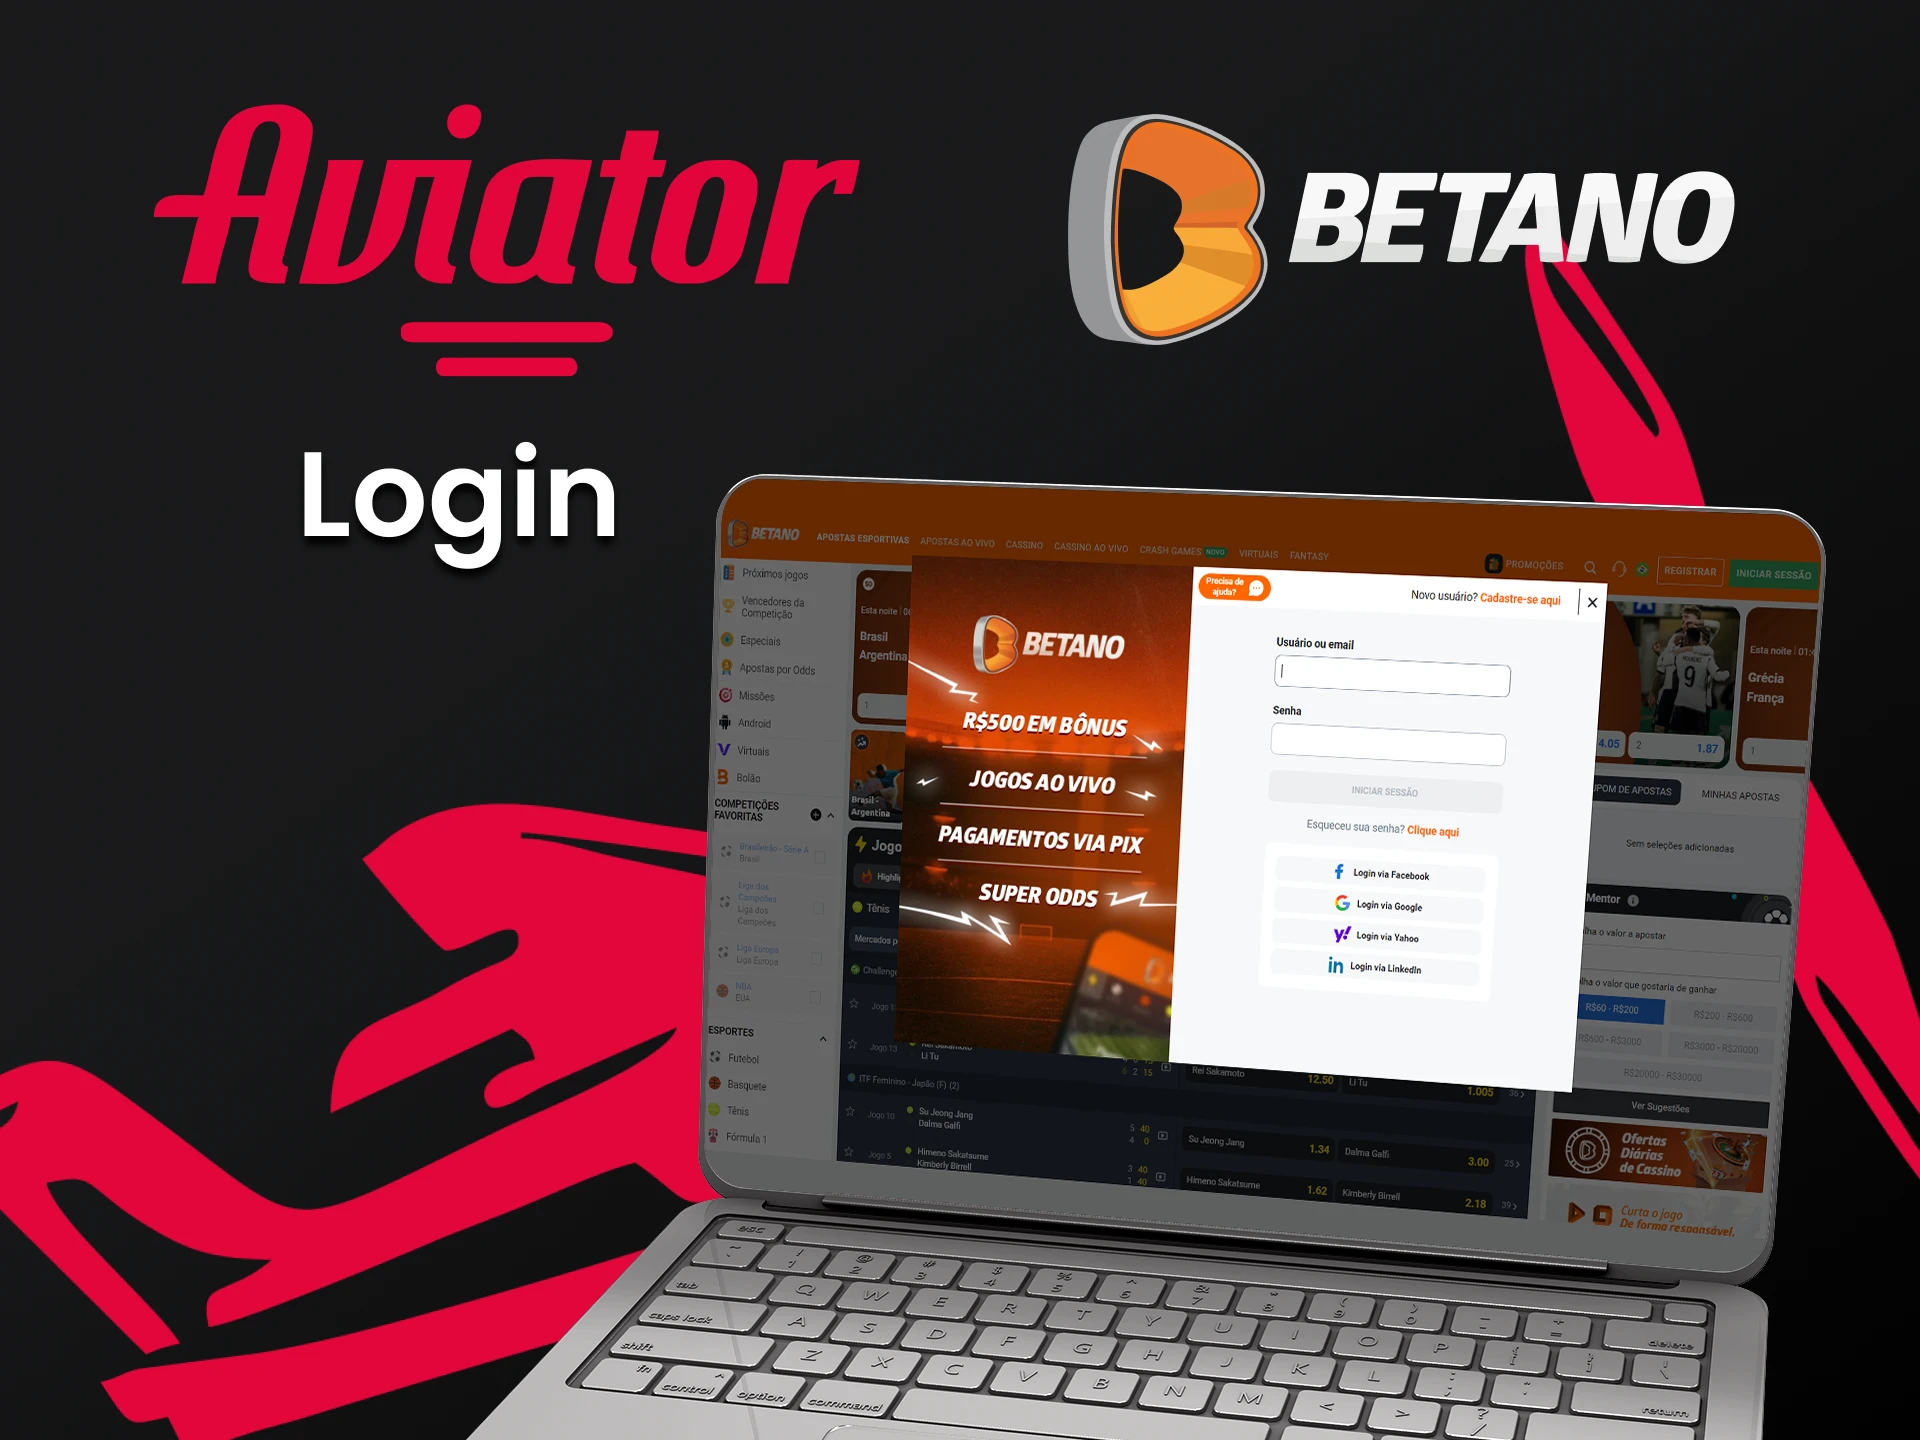 Faça login na sua conta Betano para jogar Aviator.